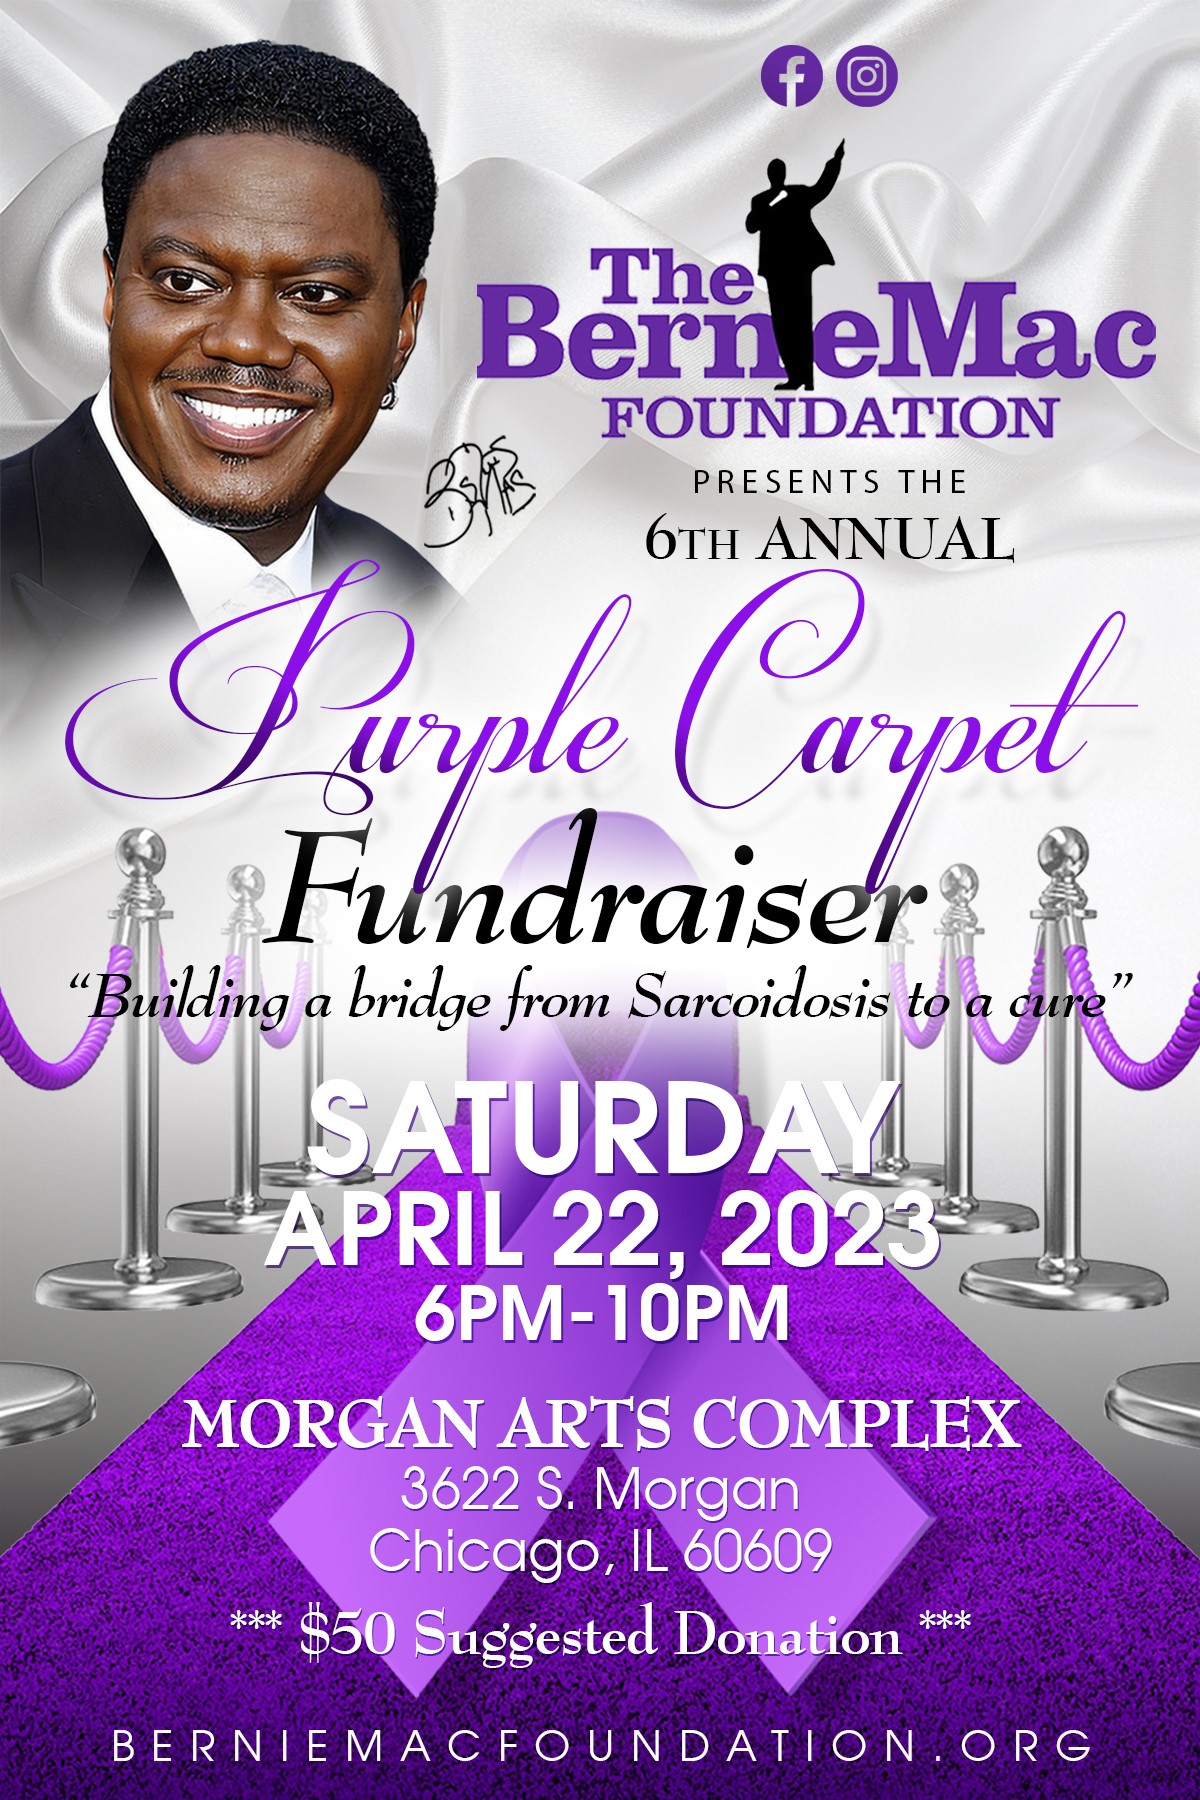 Purple Carpet Fundraiser Event 2023  on avr. 22, 18:00@Morgan Arts Complex - Achetez des billets et obtenez des informations surberniemacfoundation.org 